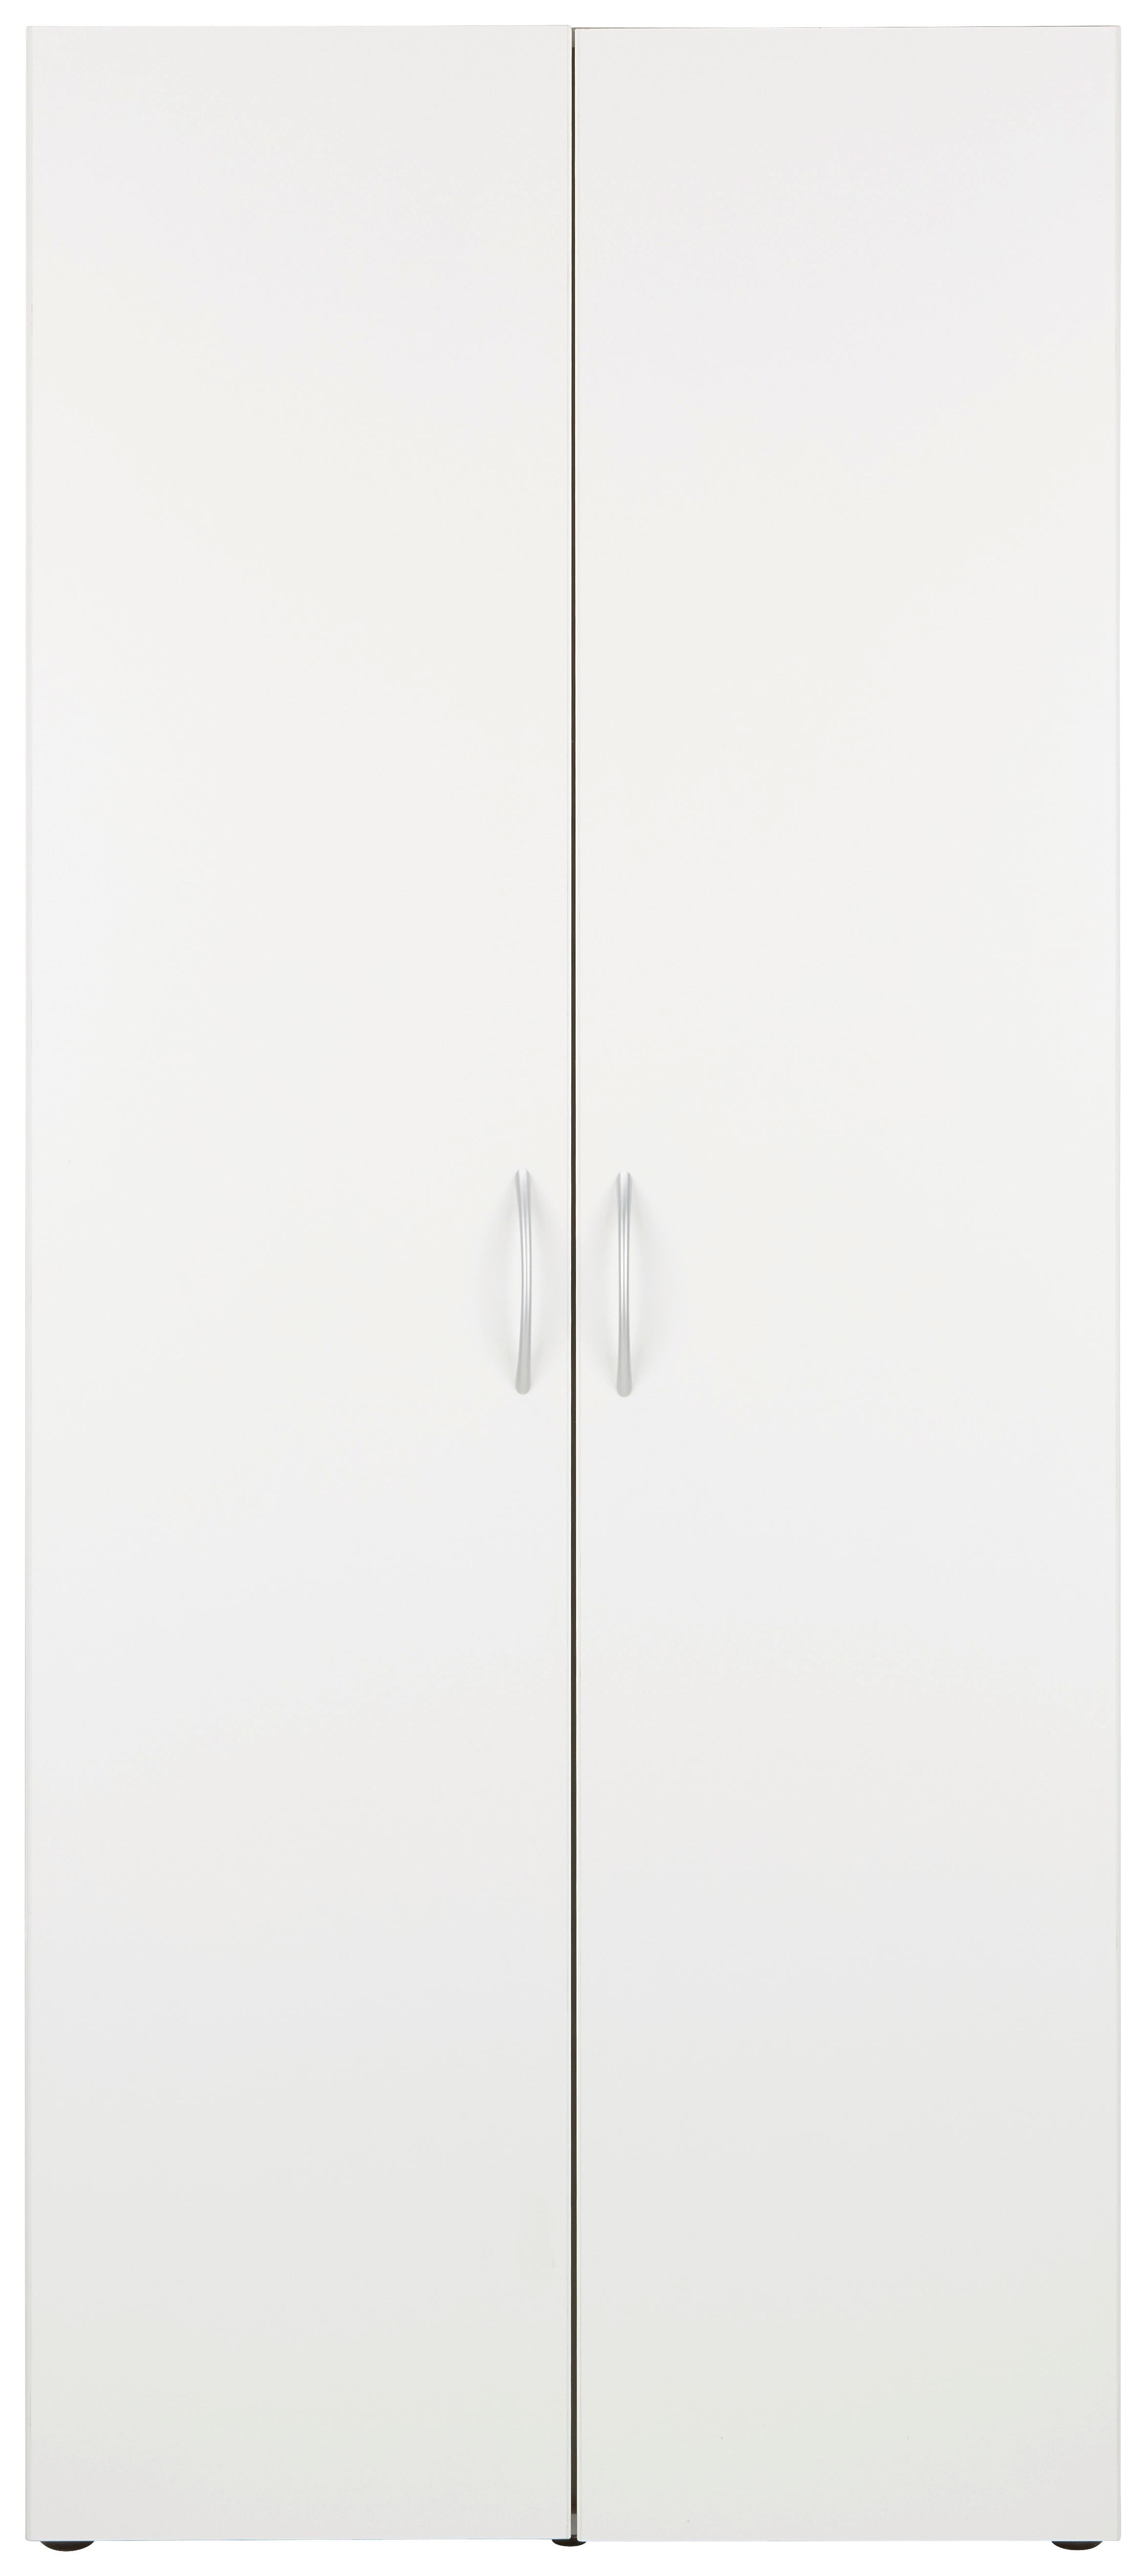 Víceúčelová Skříň Mrk - bílá/barvy hliníku, Konvenční, kompozitní dřevo/plast (80/185/40cm) - Modern Living